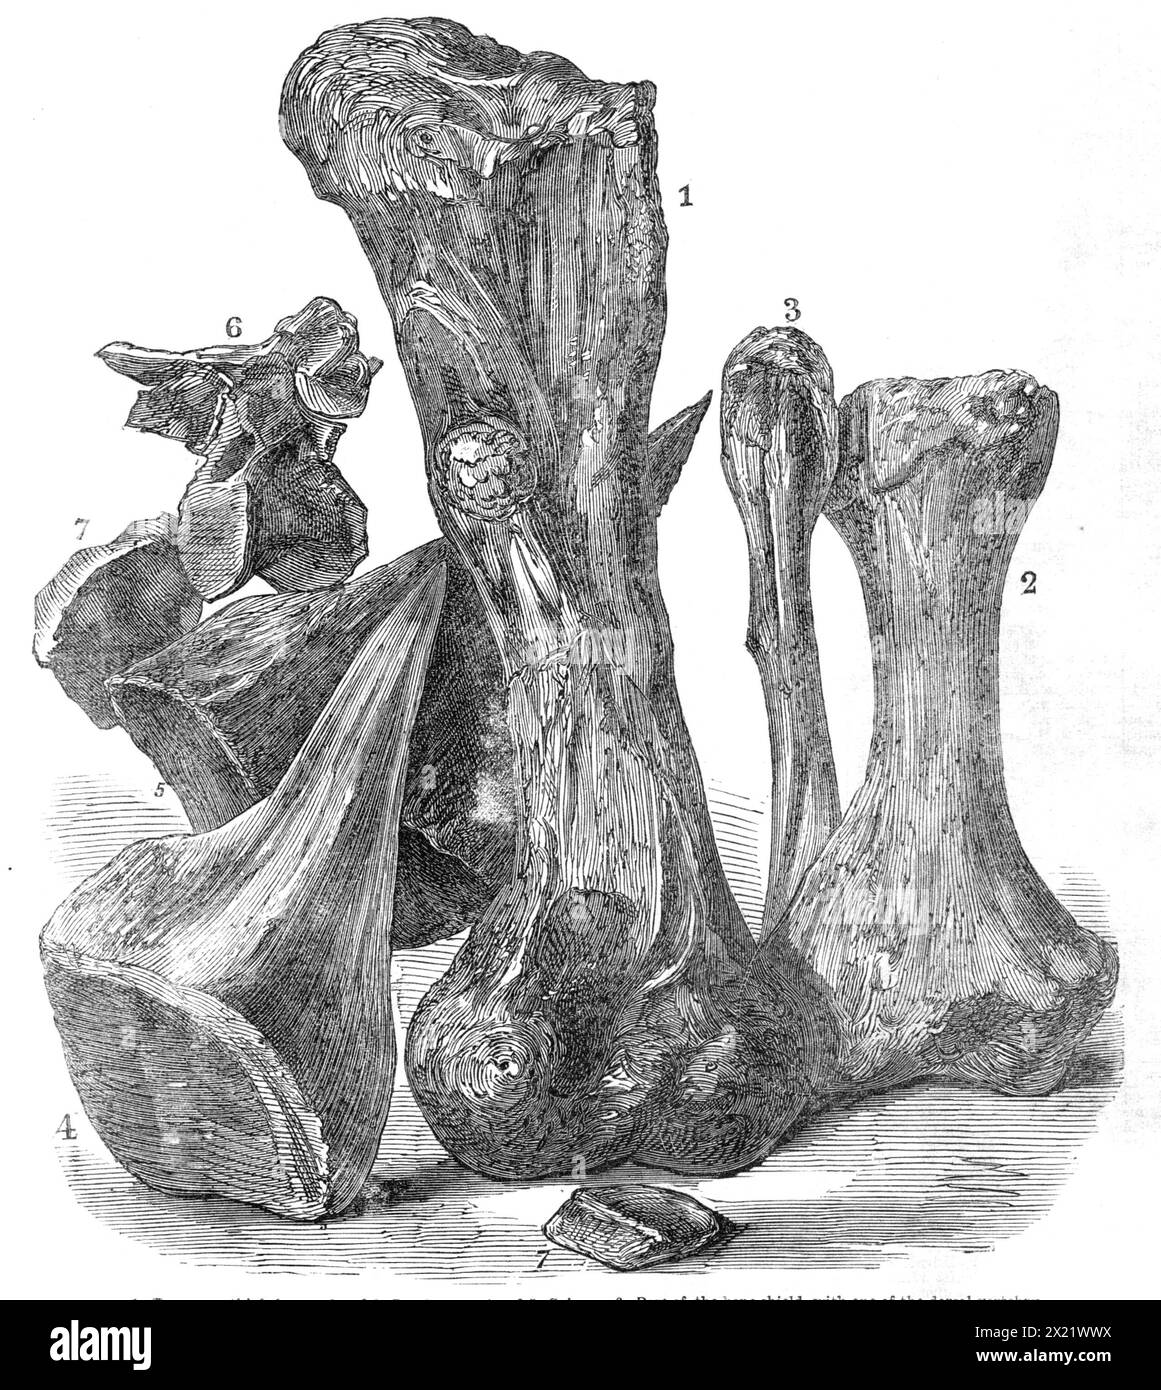 Restes d'un animal éteint trouvés dans l'île de Wight, 1865. 'Un reptile très remarquable, auquel le professeur Owen a donné le nom de Polacanthus, a récemment été découvert... ce reptile est d'un nouveau genre dans la famille des dinosauriens... le personnage le plus remarquable de la créature était ceci - son dos était recouvert d'un immense bouclier osseux... à propos de &#xbd ; in. épais, et enlevant toute élasticité de la colonne vertébrale. Cette façon inhabituelle de renforcer le dos à travers le bouclier osseux s'accompagne de vertèbres dorsales très fines mais profondes, comme on peut le voir dans l'os n° 6. Un autre Banque D'Images